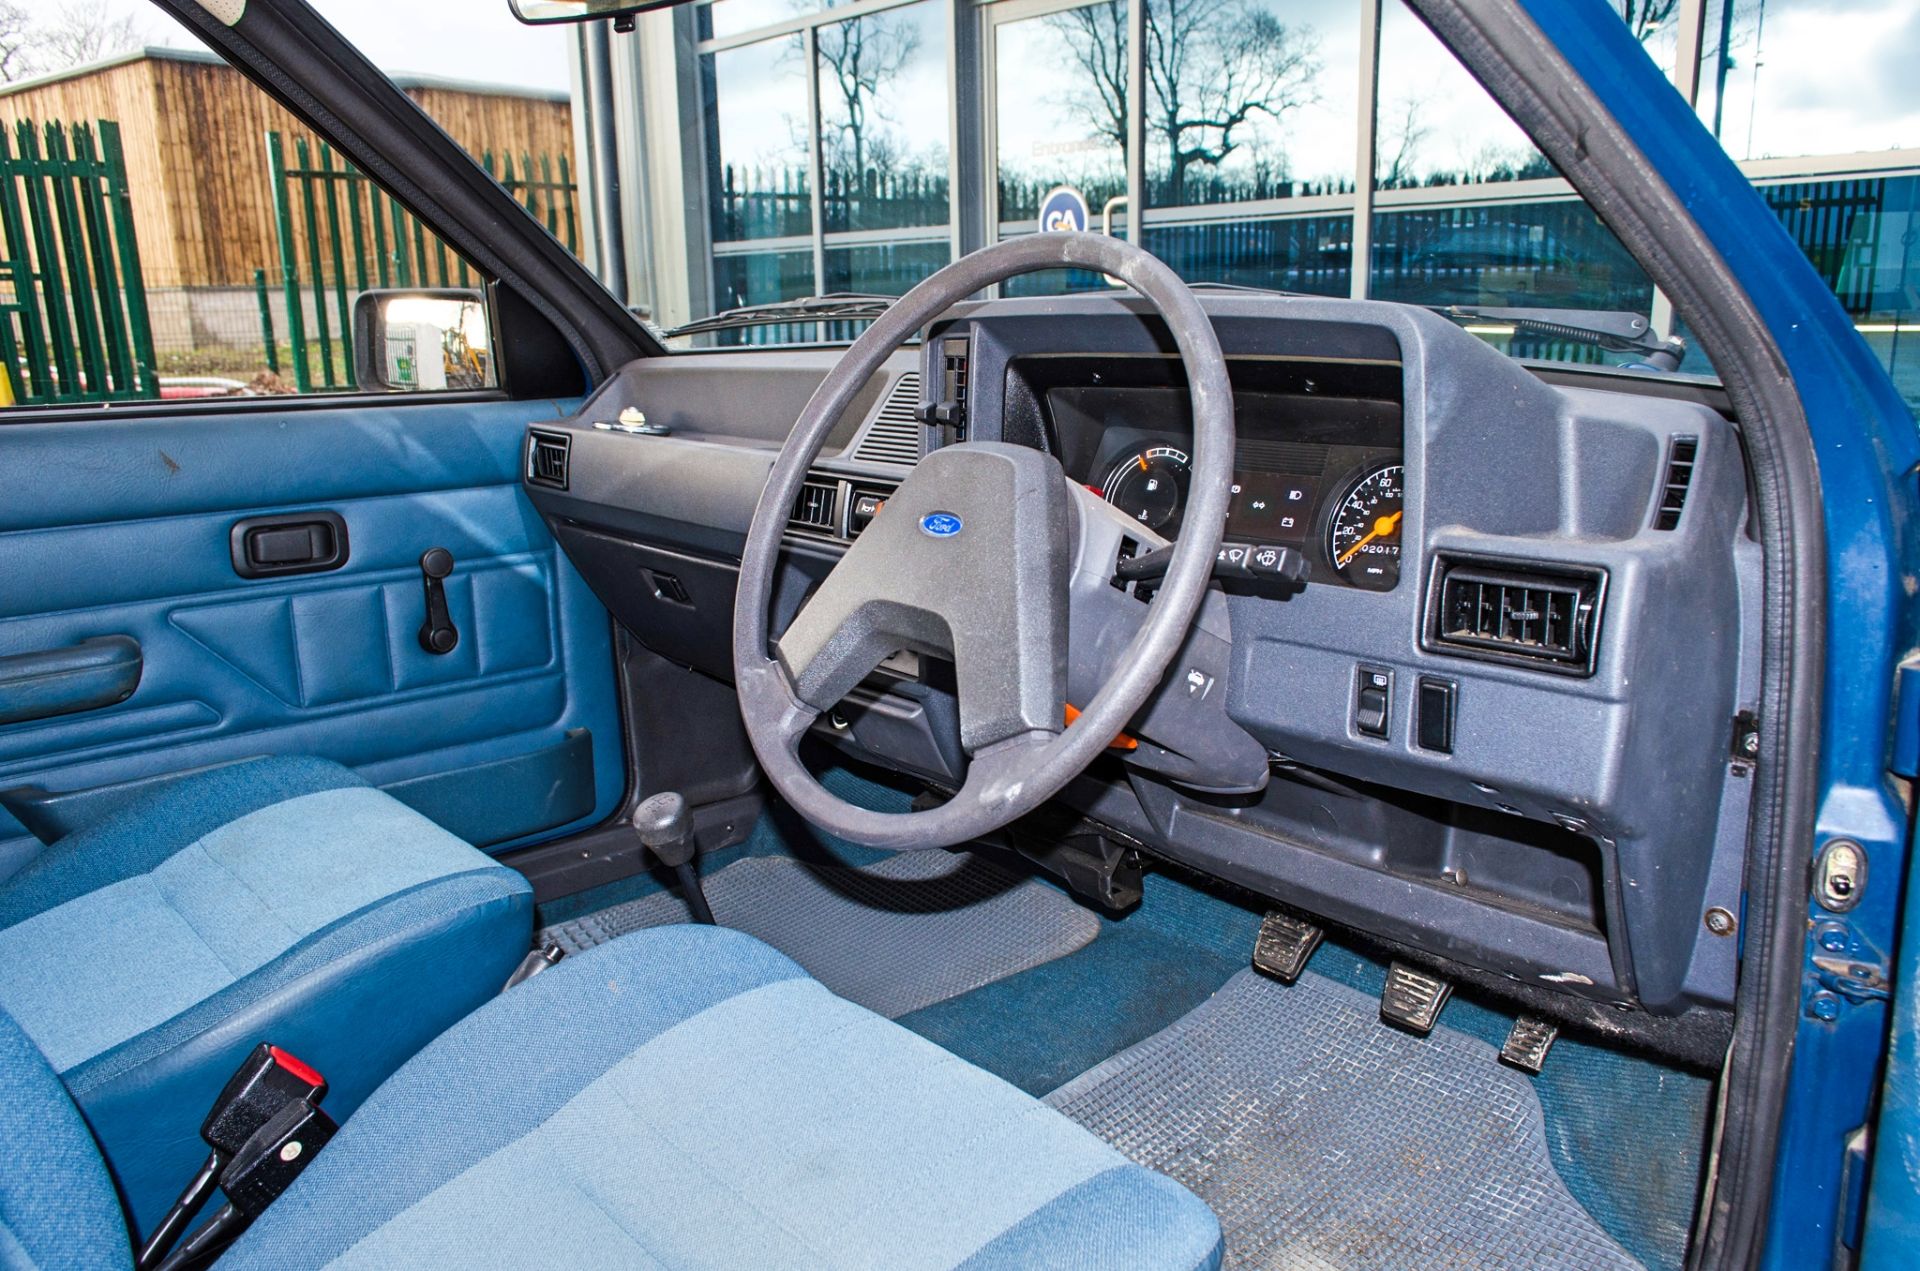 1982 Ford Escort 1.1 L 1100 cc 5 door hatchback 0nly 2017 miles - Image 26 of 50